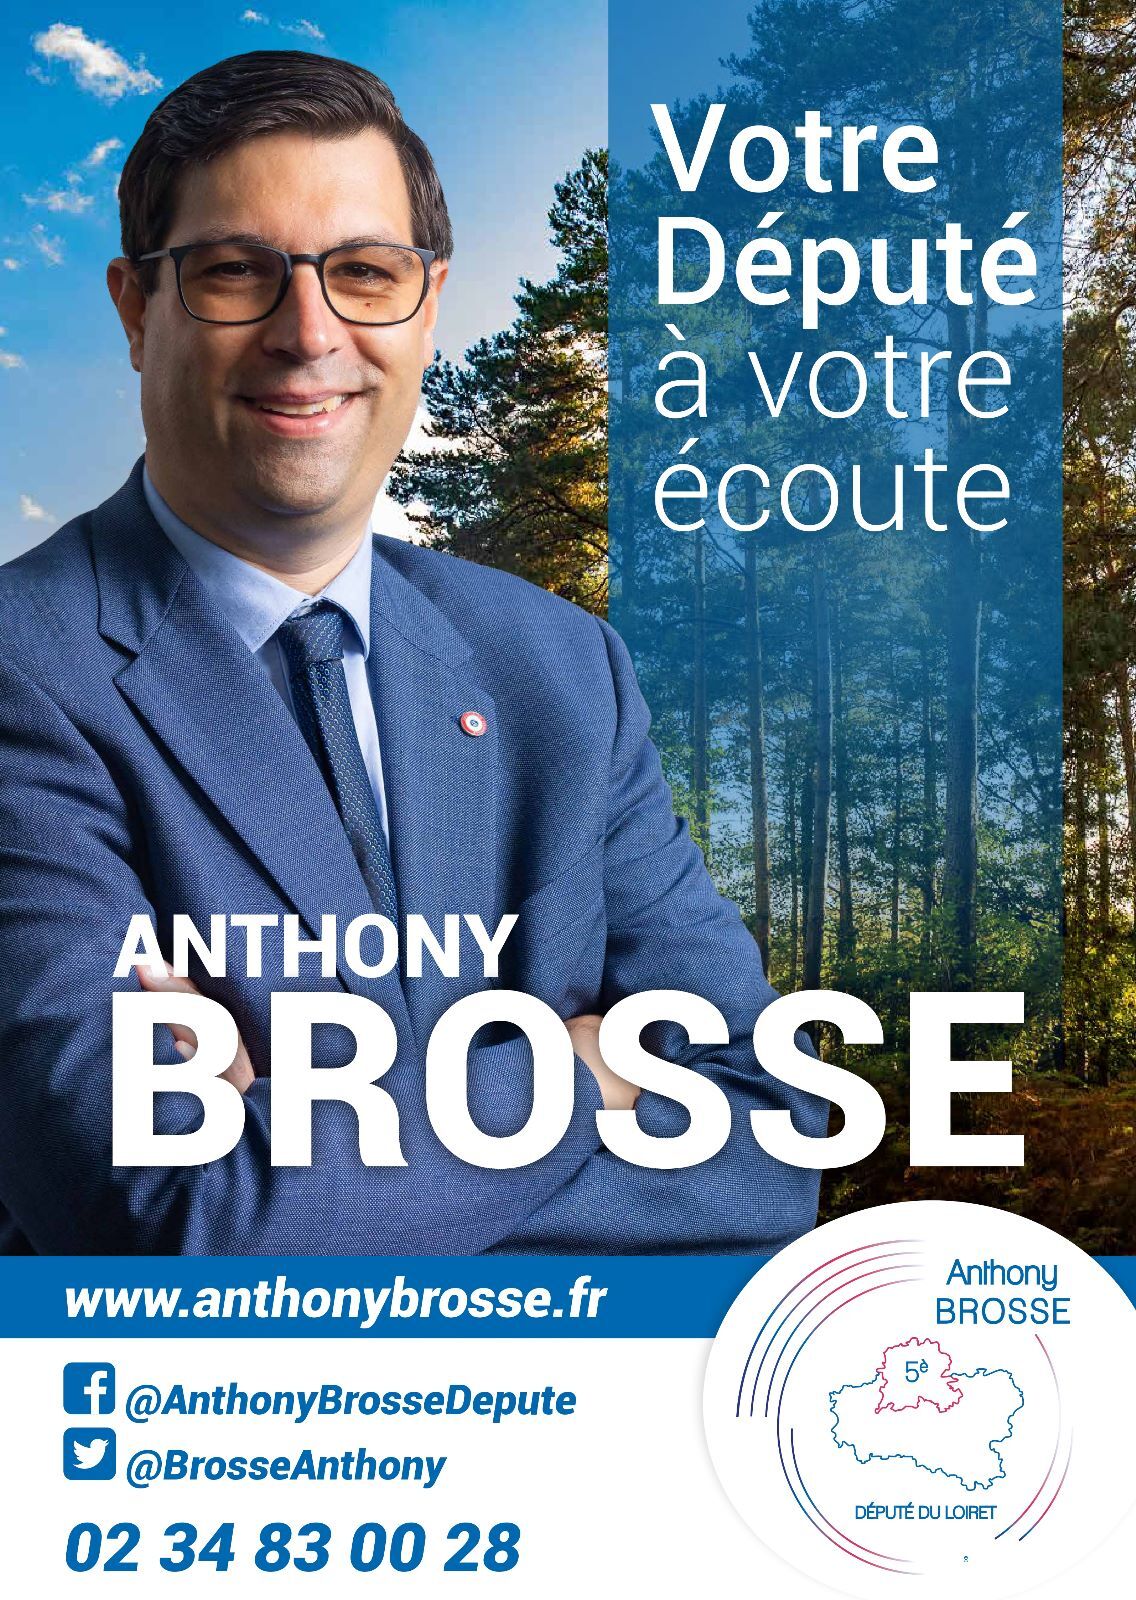 Député Anthony BROSSE